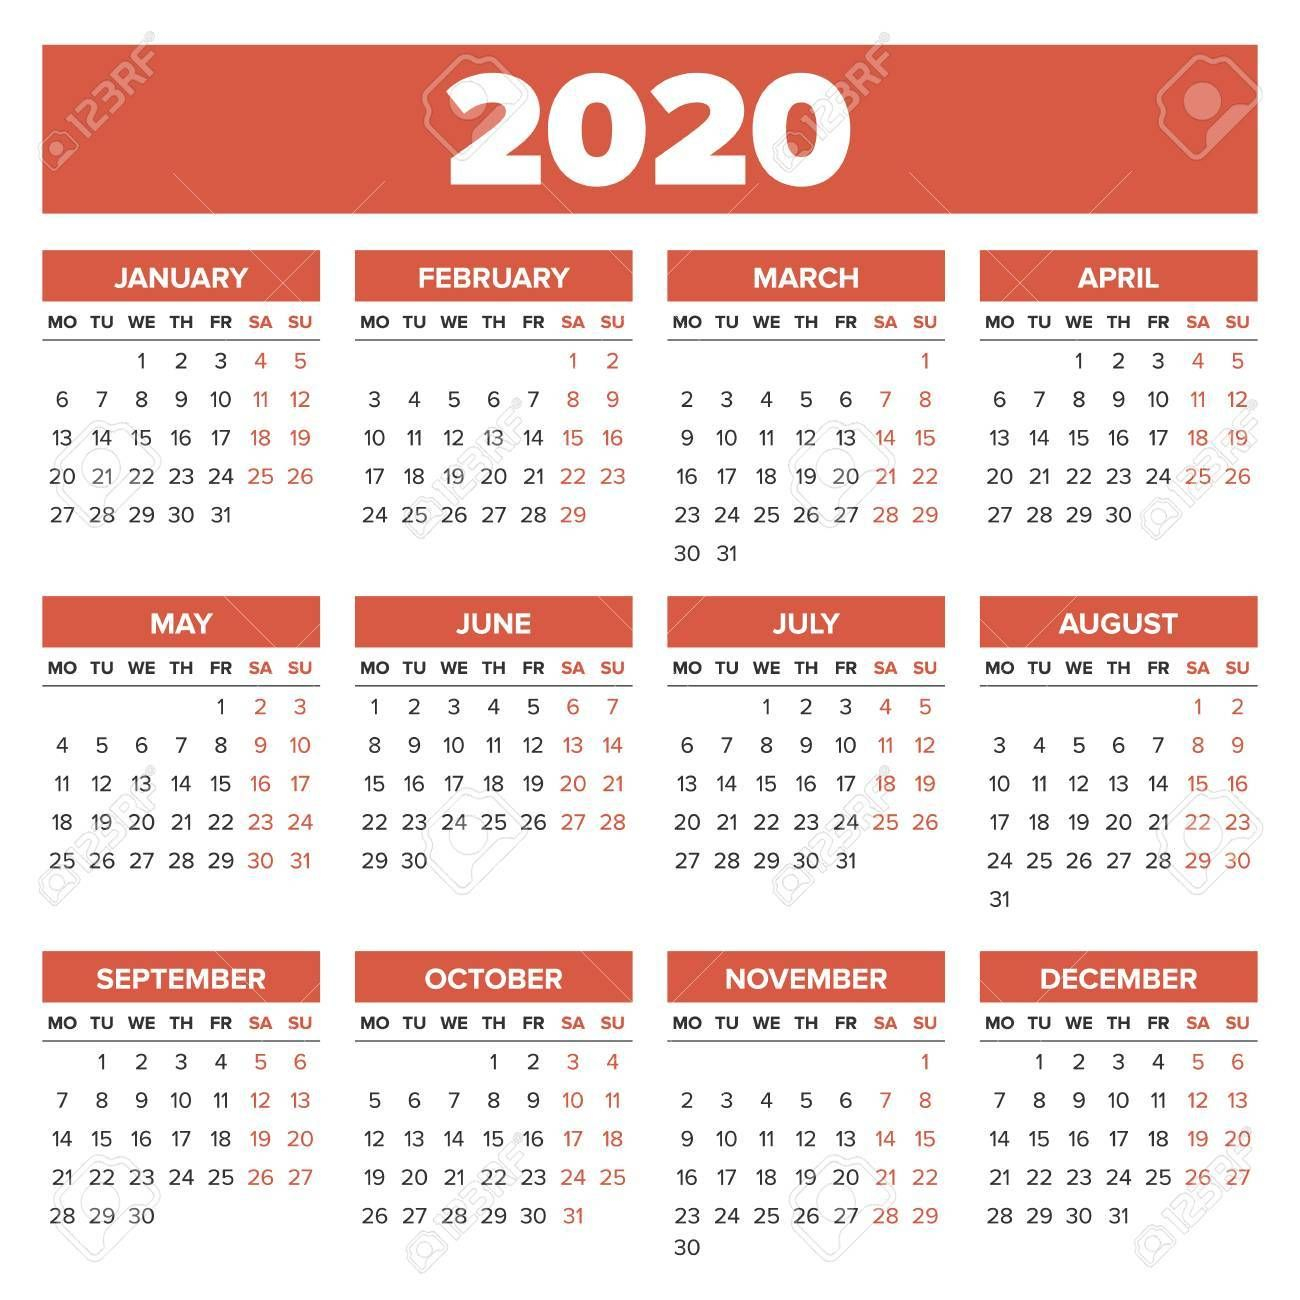 Calendar 2020 Aramco pertaining to Oilfield Hitch Calendar